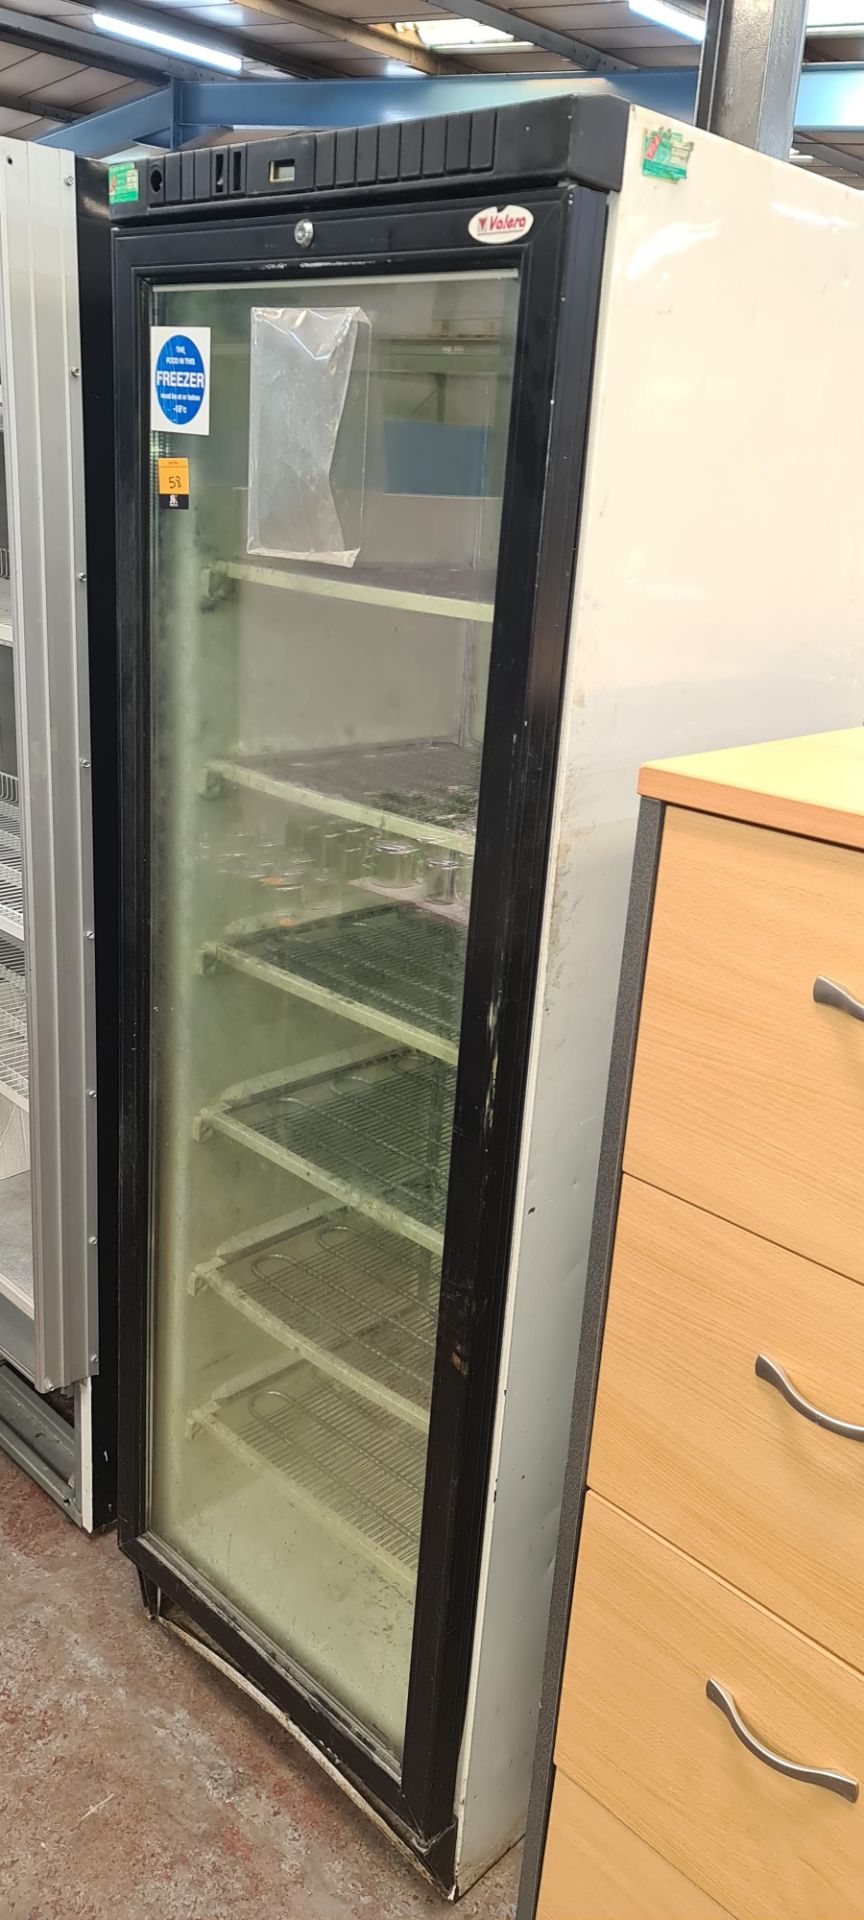 Valera tall single door freezer with clear door - Image 2 of 4